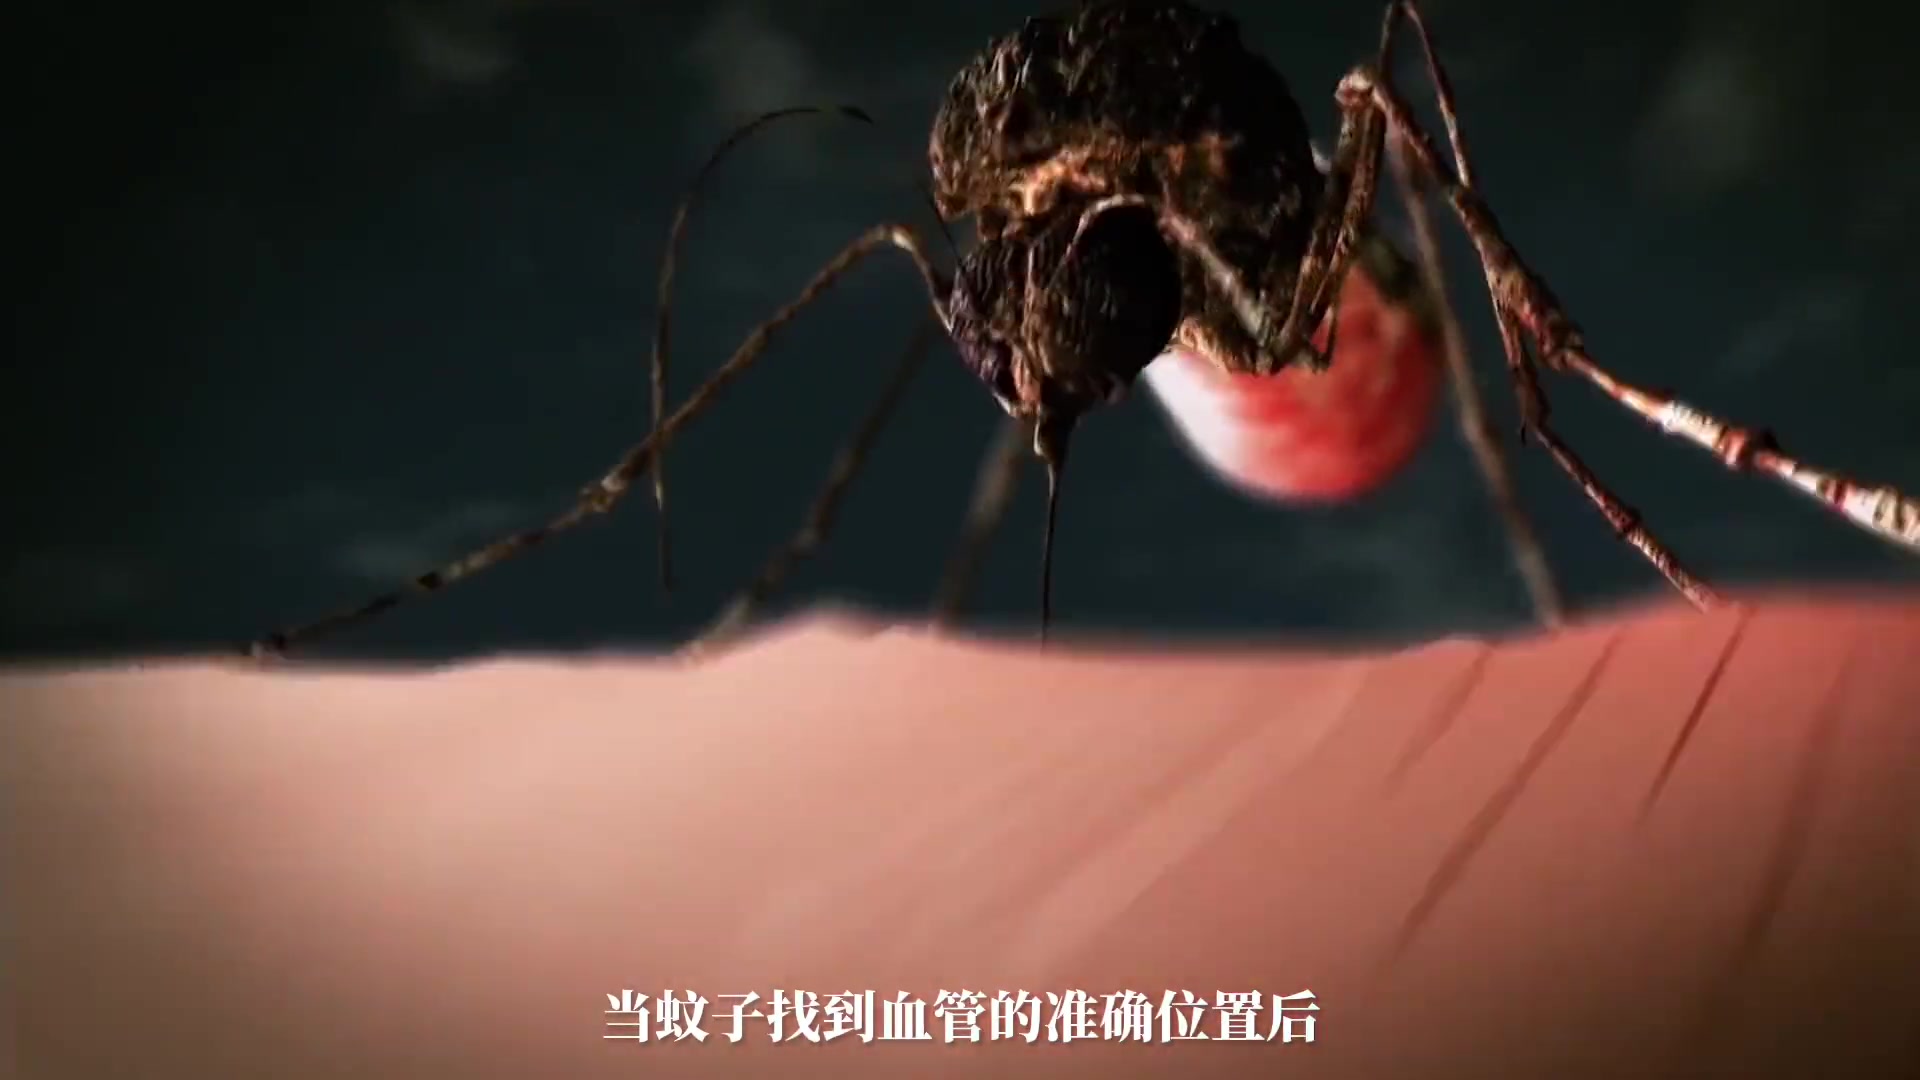 交配后才吸血？蚊子如何在短暂的一生中，让我们对其深恶痛绝？